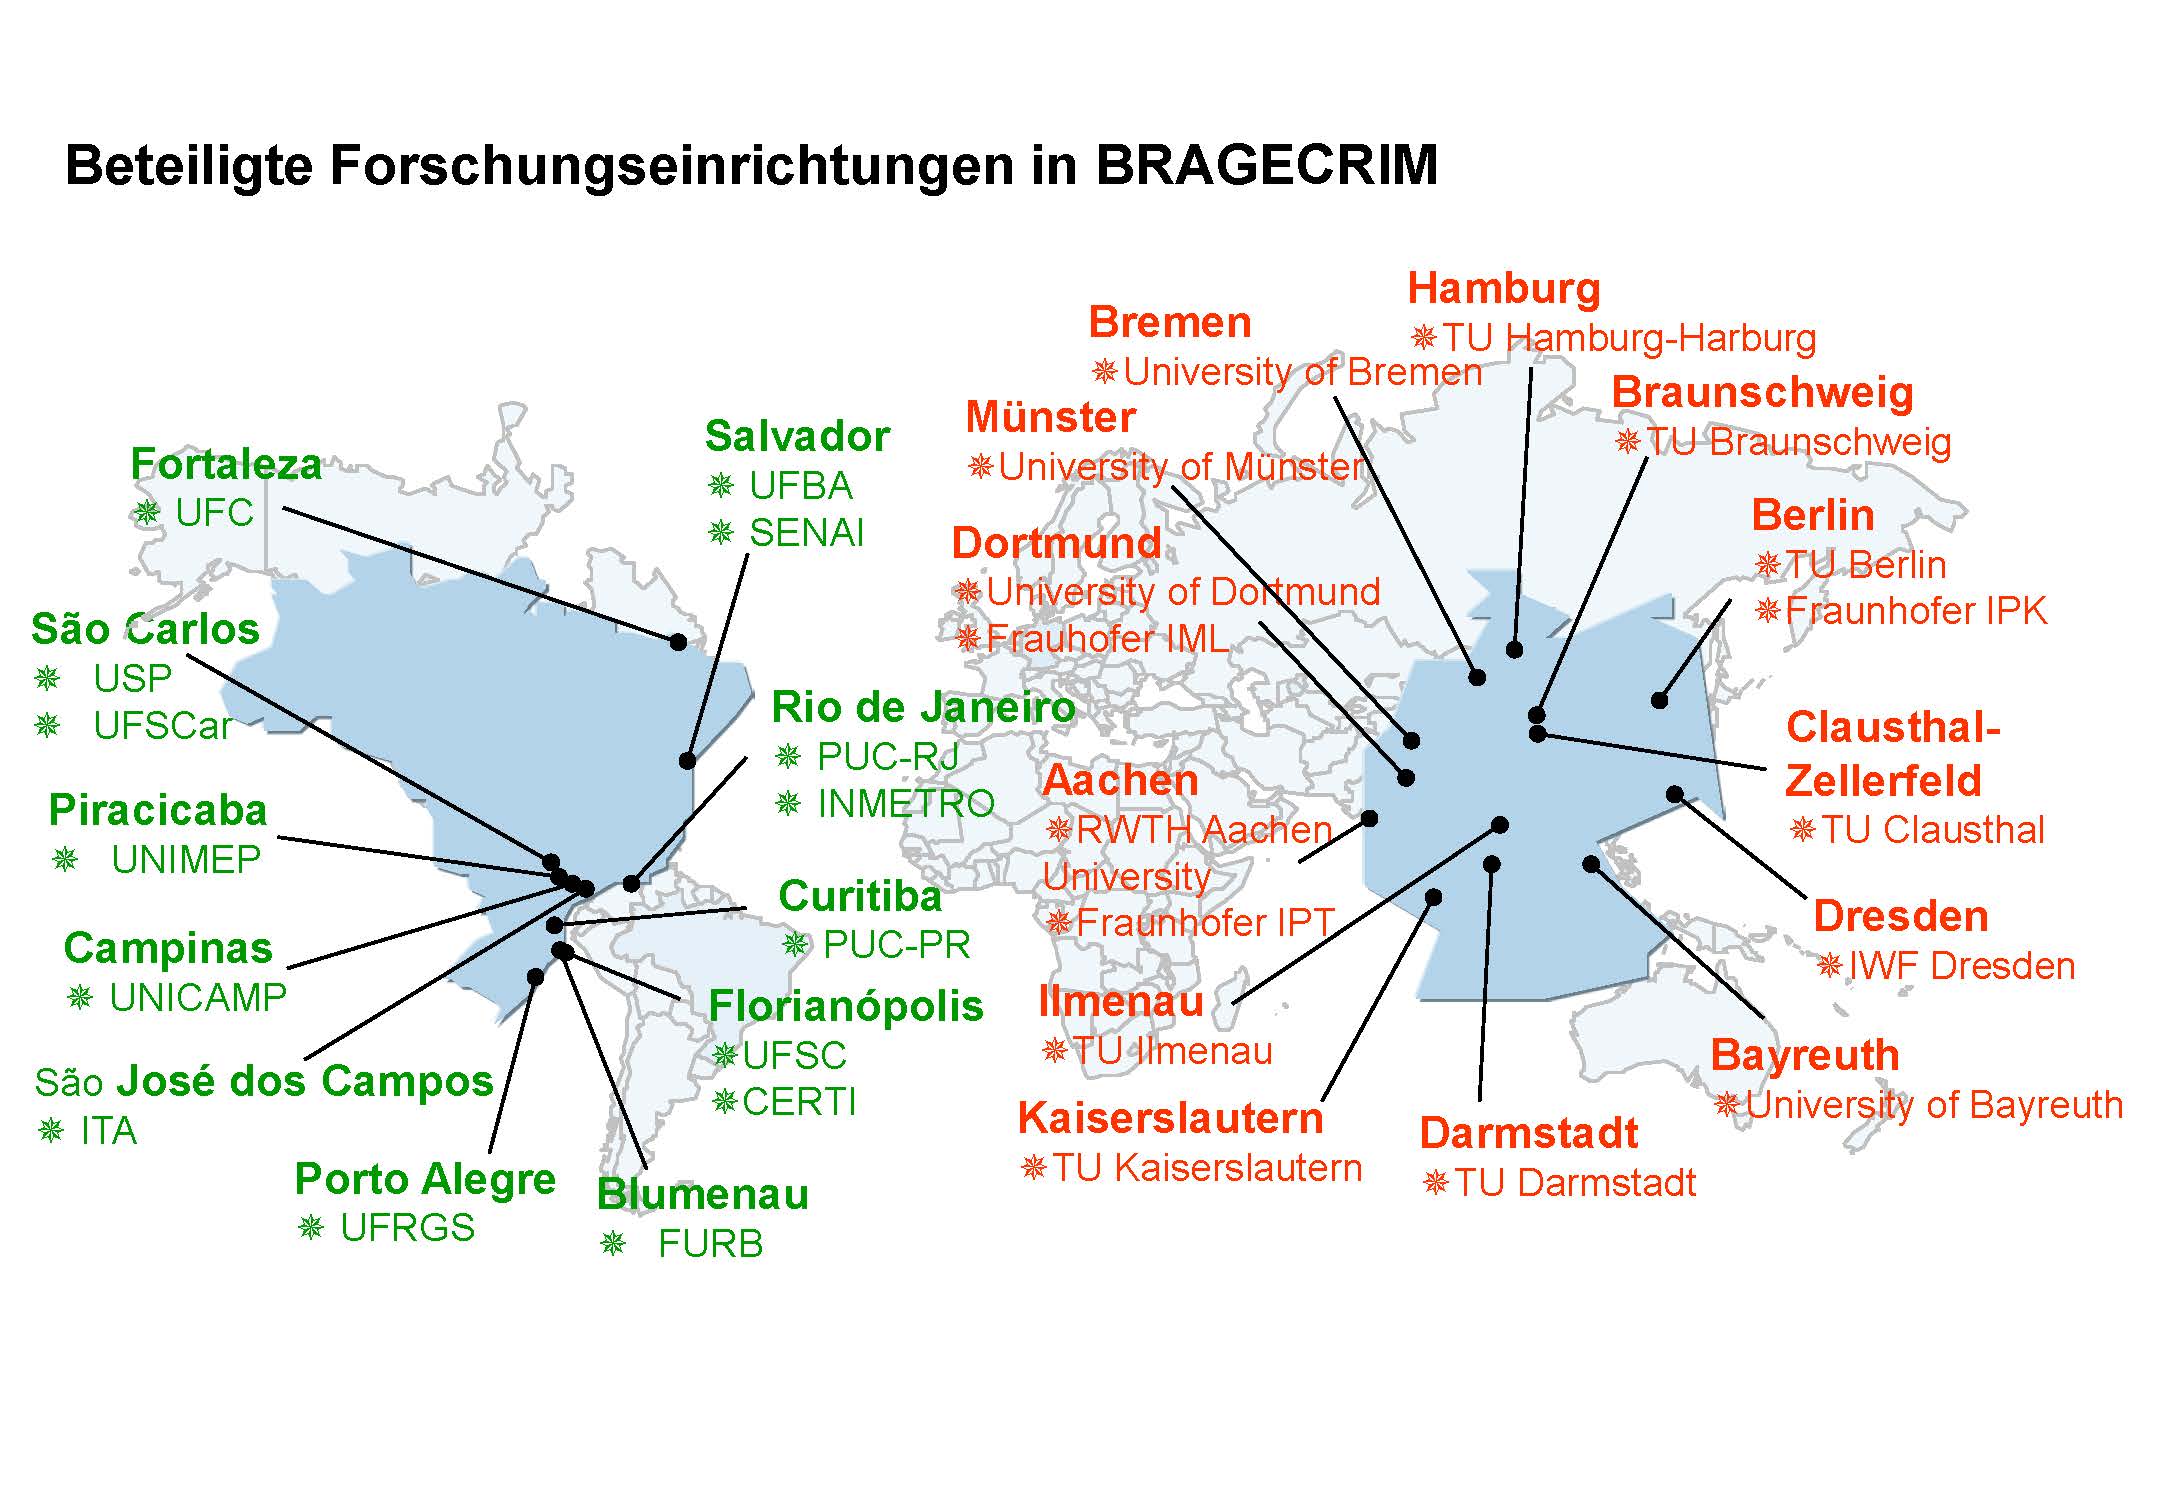 Beteiligte Forschungseinrichtungen in BRAGECRIM